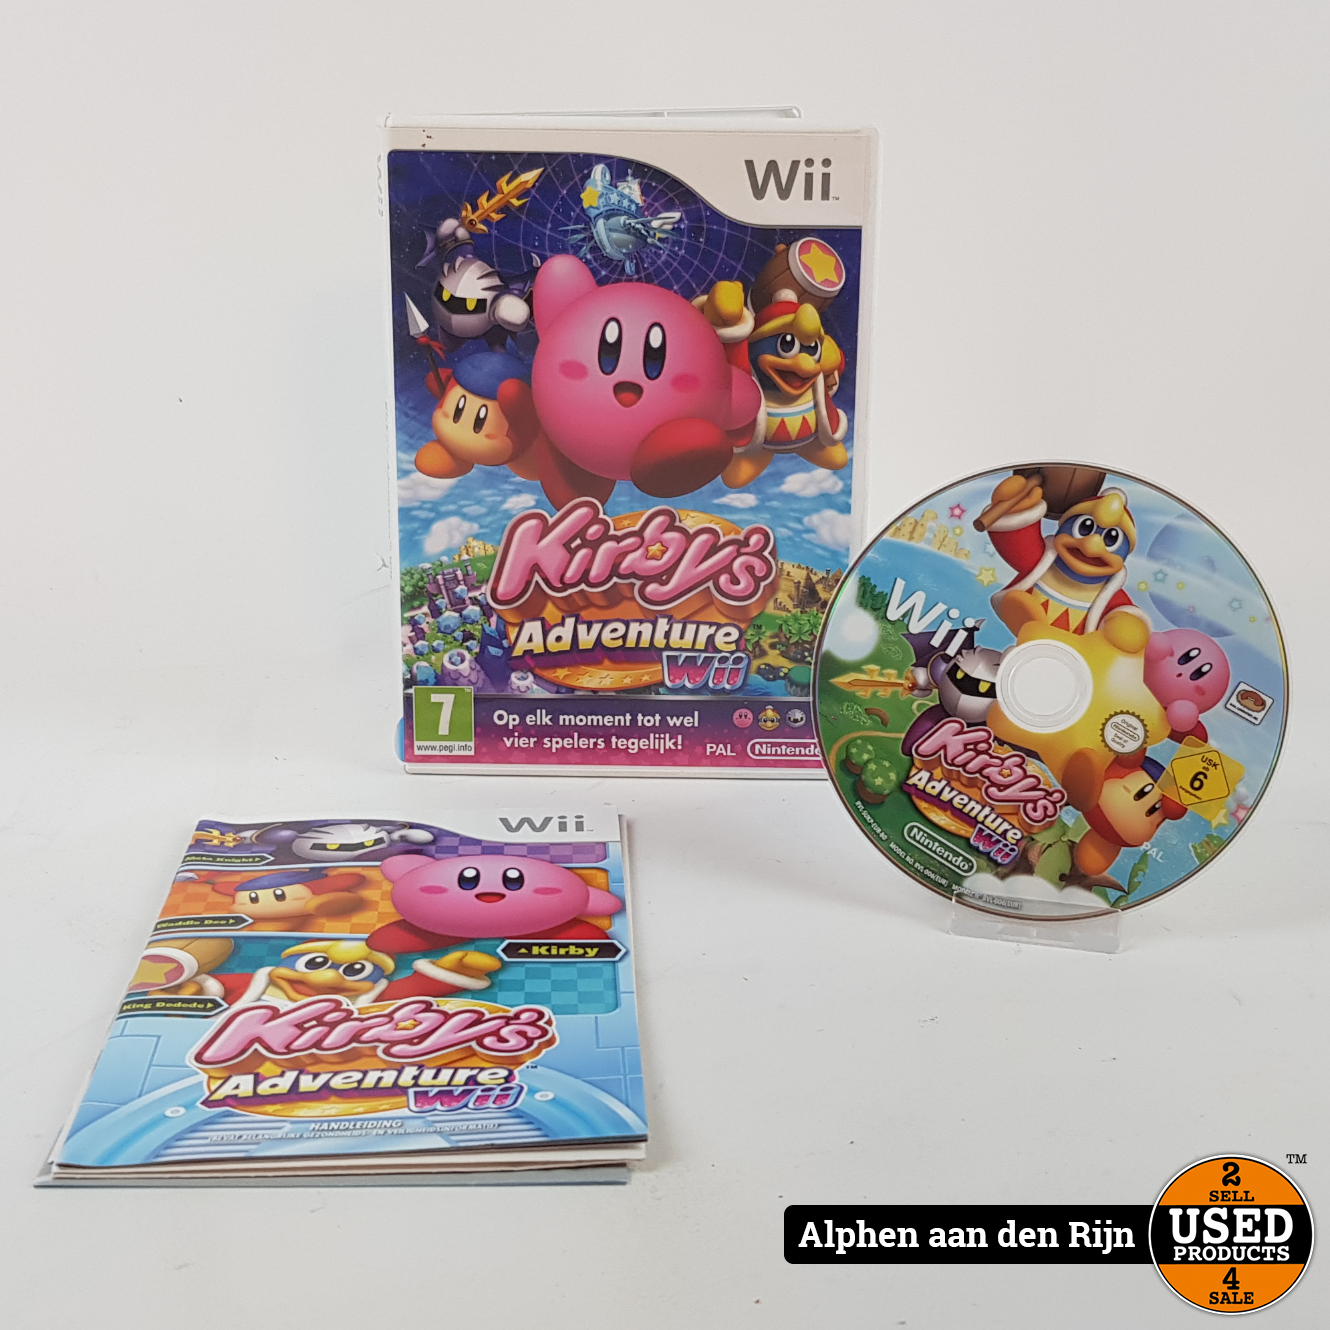 Universiteit een Duidelijk maken Nintendo Wii U 32gb + kabels Kirby's Adventure Wii - Used Products Alphen  aan den Rijn